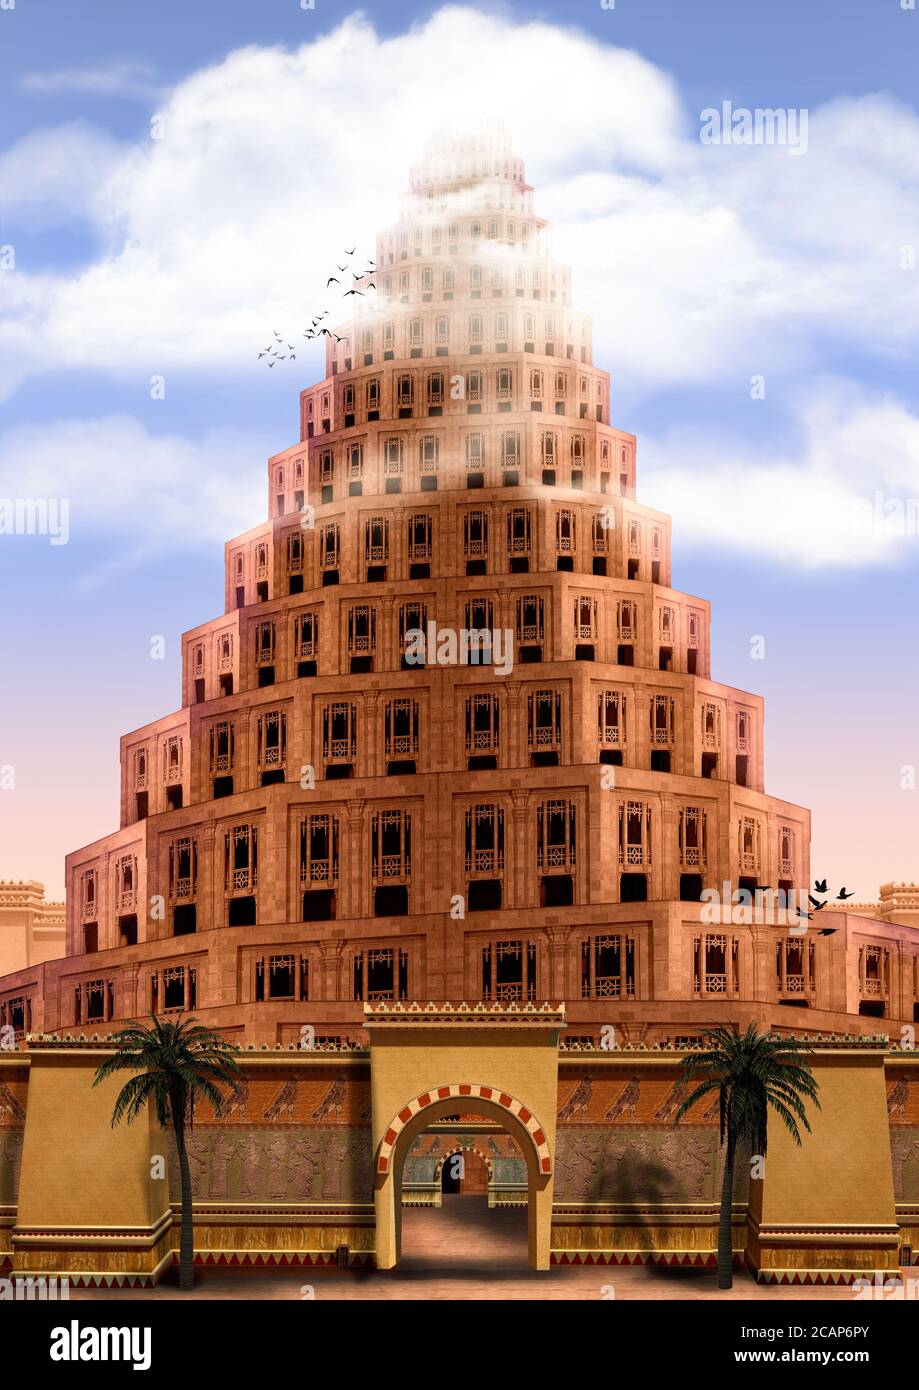 Der Turm zu Babel, aus der Bibel Genesis, erreicht den Himmel, verschwinden in den Wolken. Der Ursprungsmythos erklärt verschiedene Sprachen gesprochen herum Stockfoto